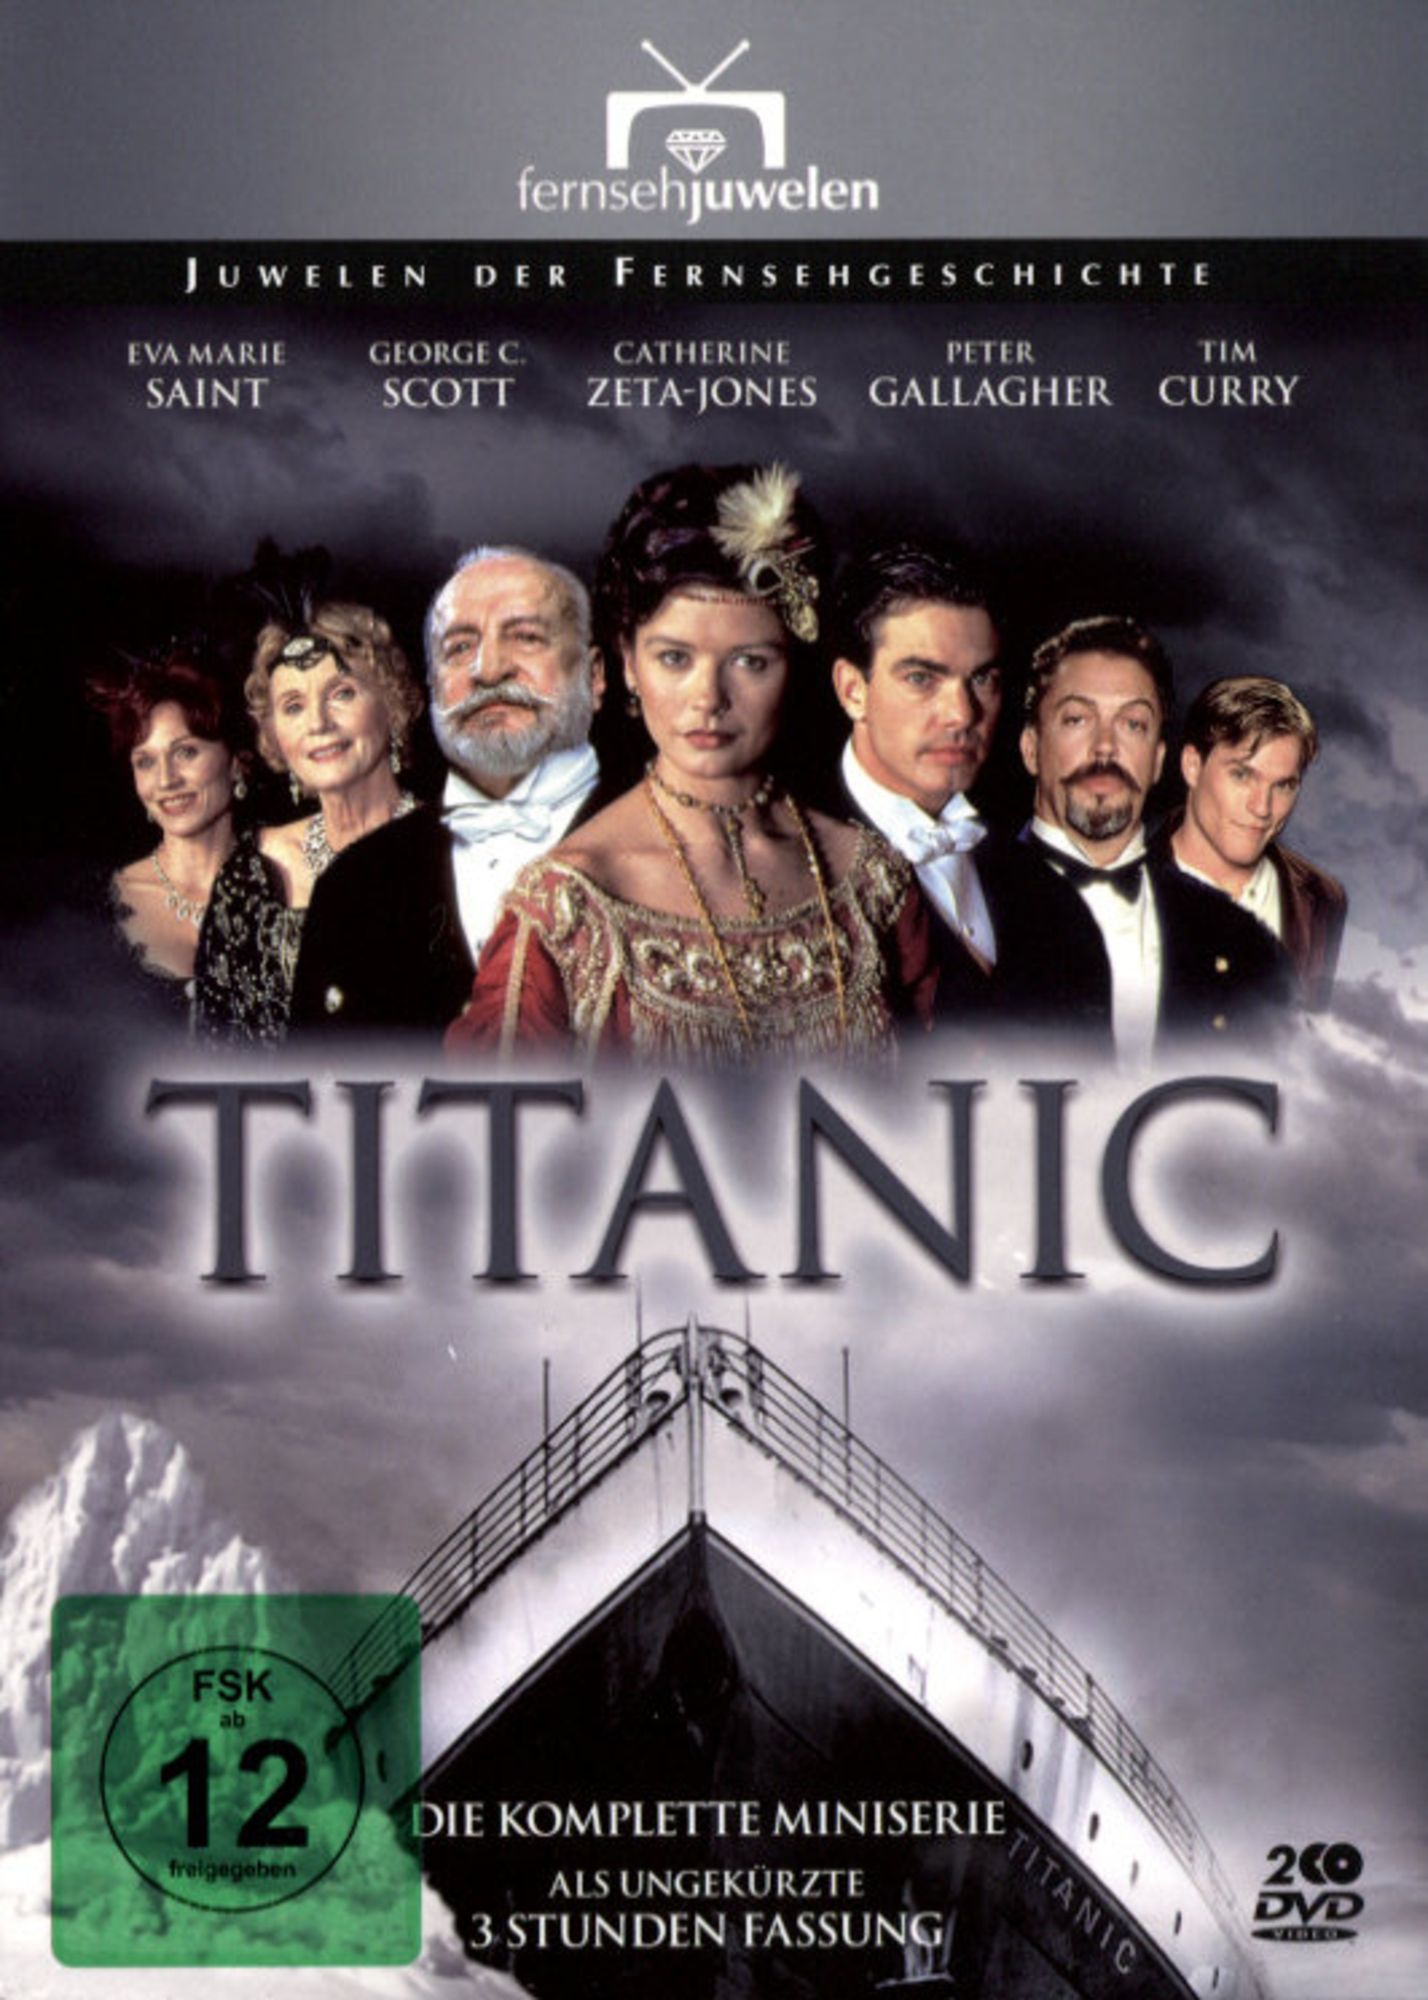 The Titanic - Die komplette Miniserie [2 DVDs] von Robert Lieberman - DVD |  Thalia